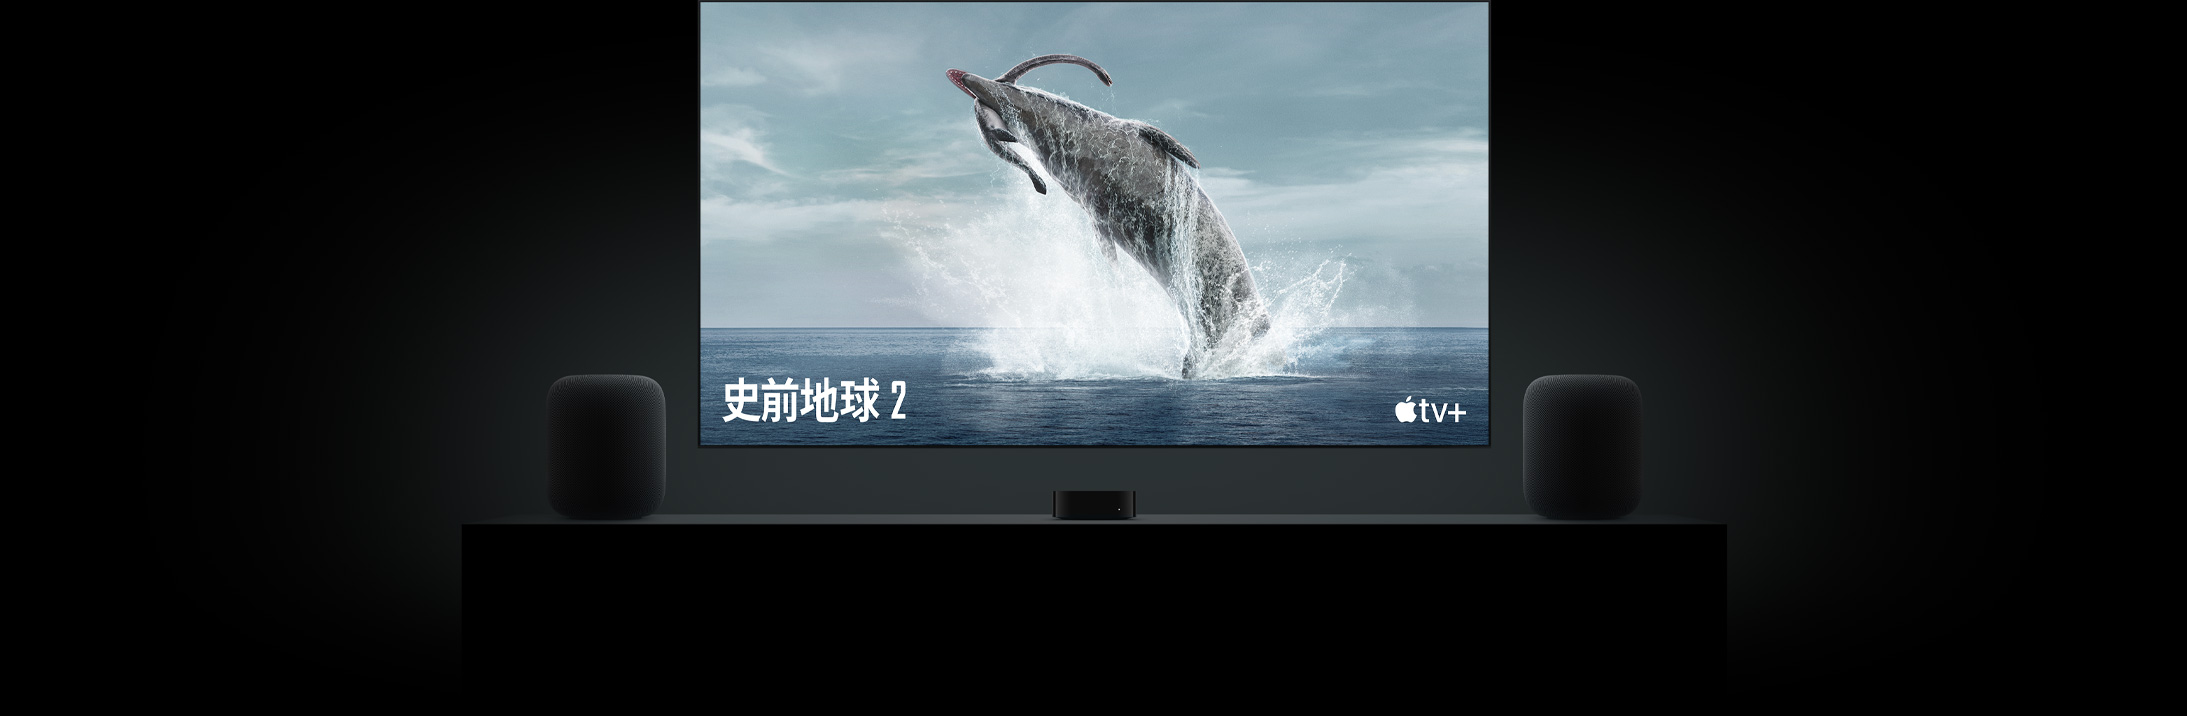 大型平面電視螢幕展示《史前地球》裡生動逼真的恐龍影像。電視懸掛在 Apple TV 上方，兩部 HomePod 揚聲器分別放在客廳電視櫃兩側